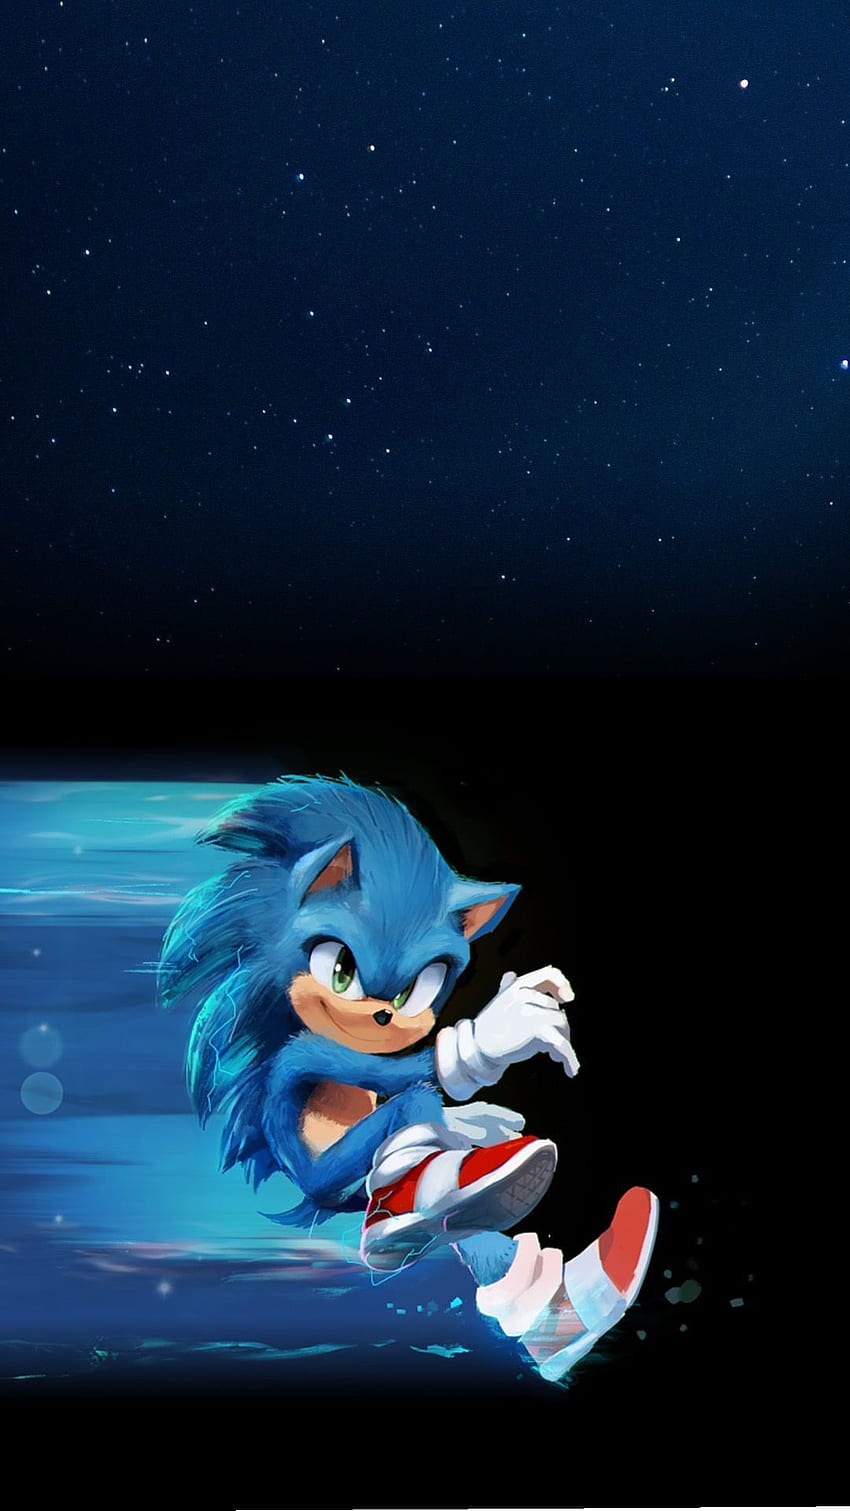 Sonic MOVIE in 2020. Hedgehog movie, Sonic the hegehog, Hedgehog art, Sega Sonic HD電話の壁紙